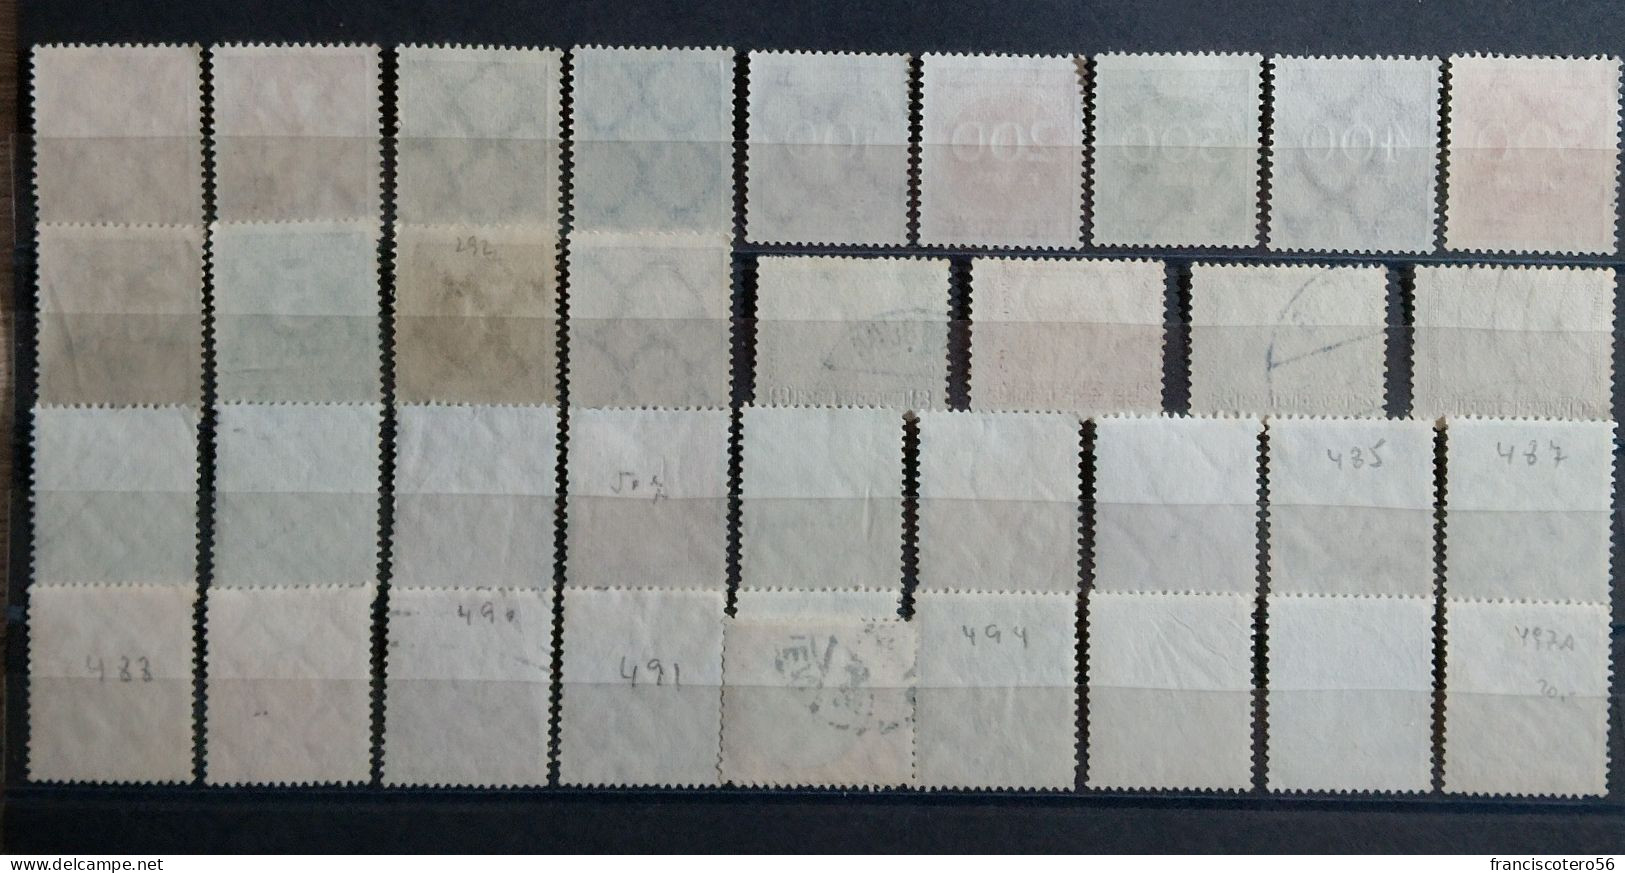 Alemania: Año. (Tipos De, 1922 - 1934). Filigrana. 126 - 36/Valores. Nuevos Sin Goma Y Usados. - Lots & Kiloware (mixtures) - Max. 999 Stamps